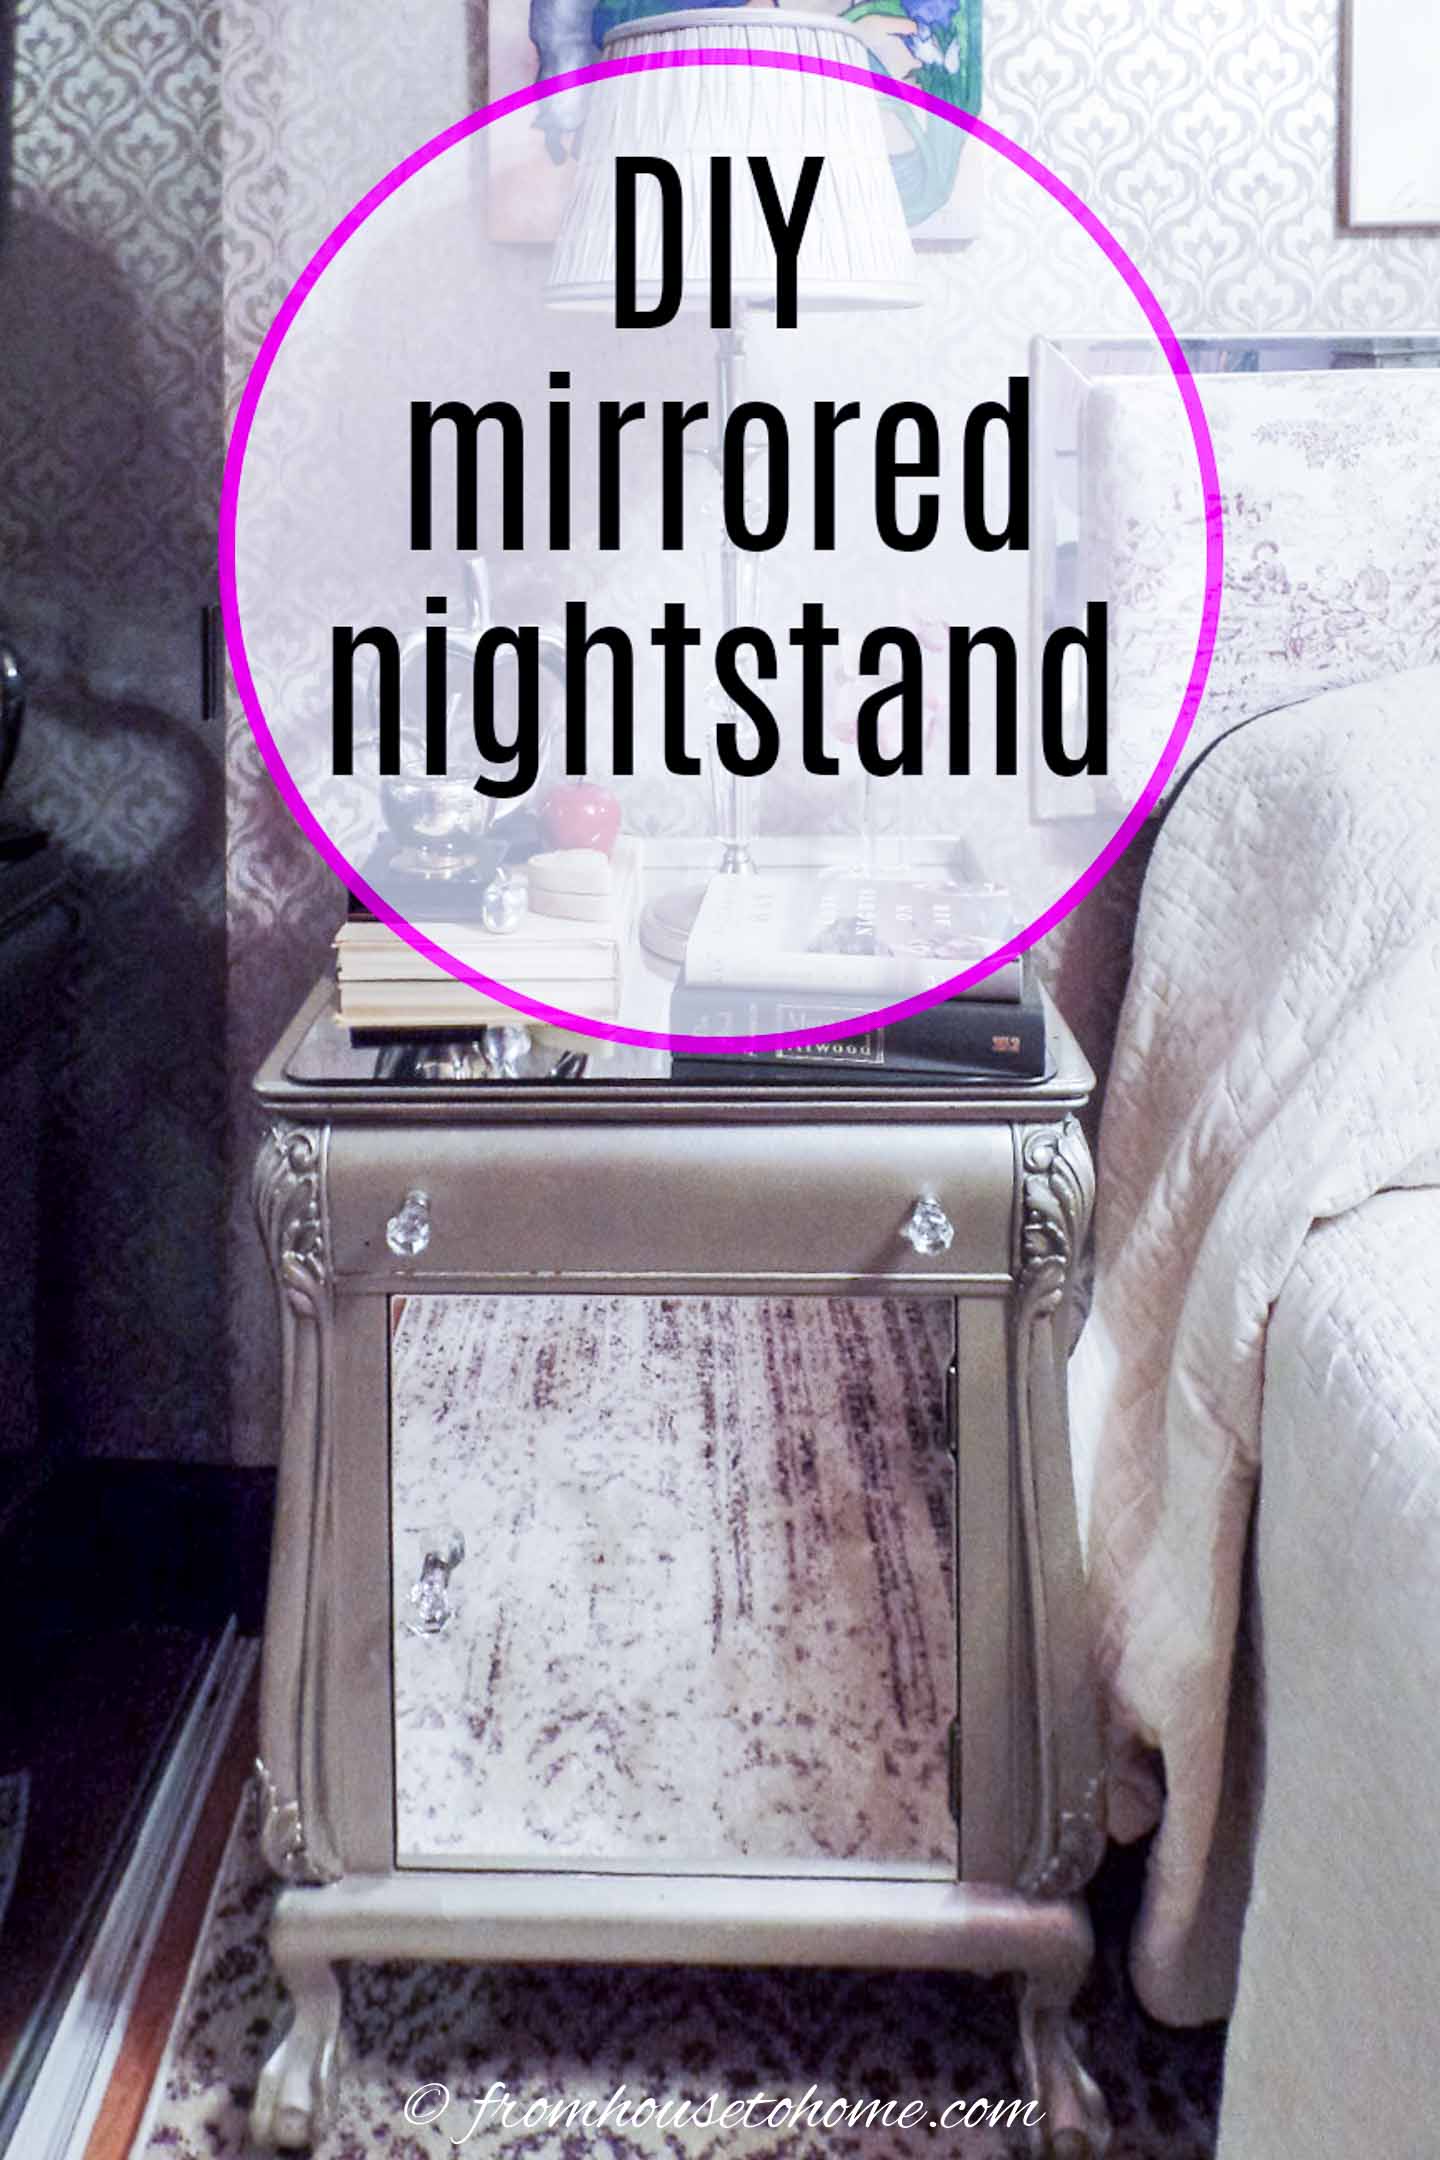 DIY mirrored nightstand